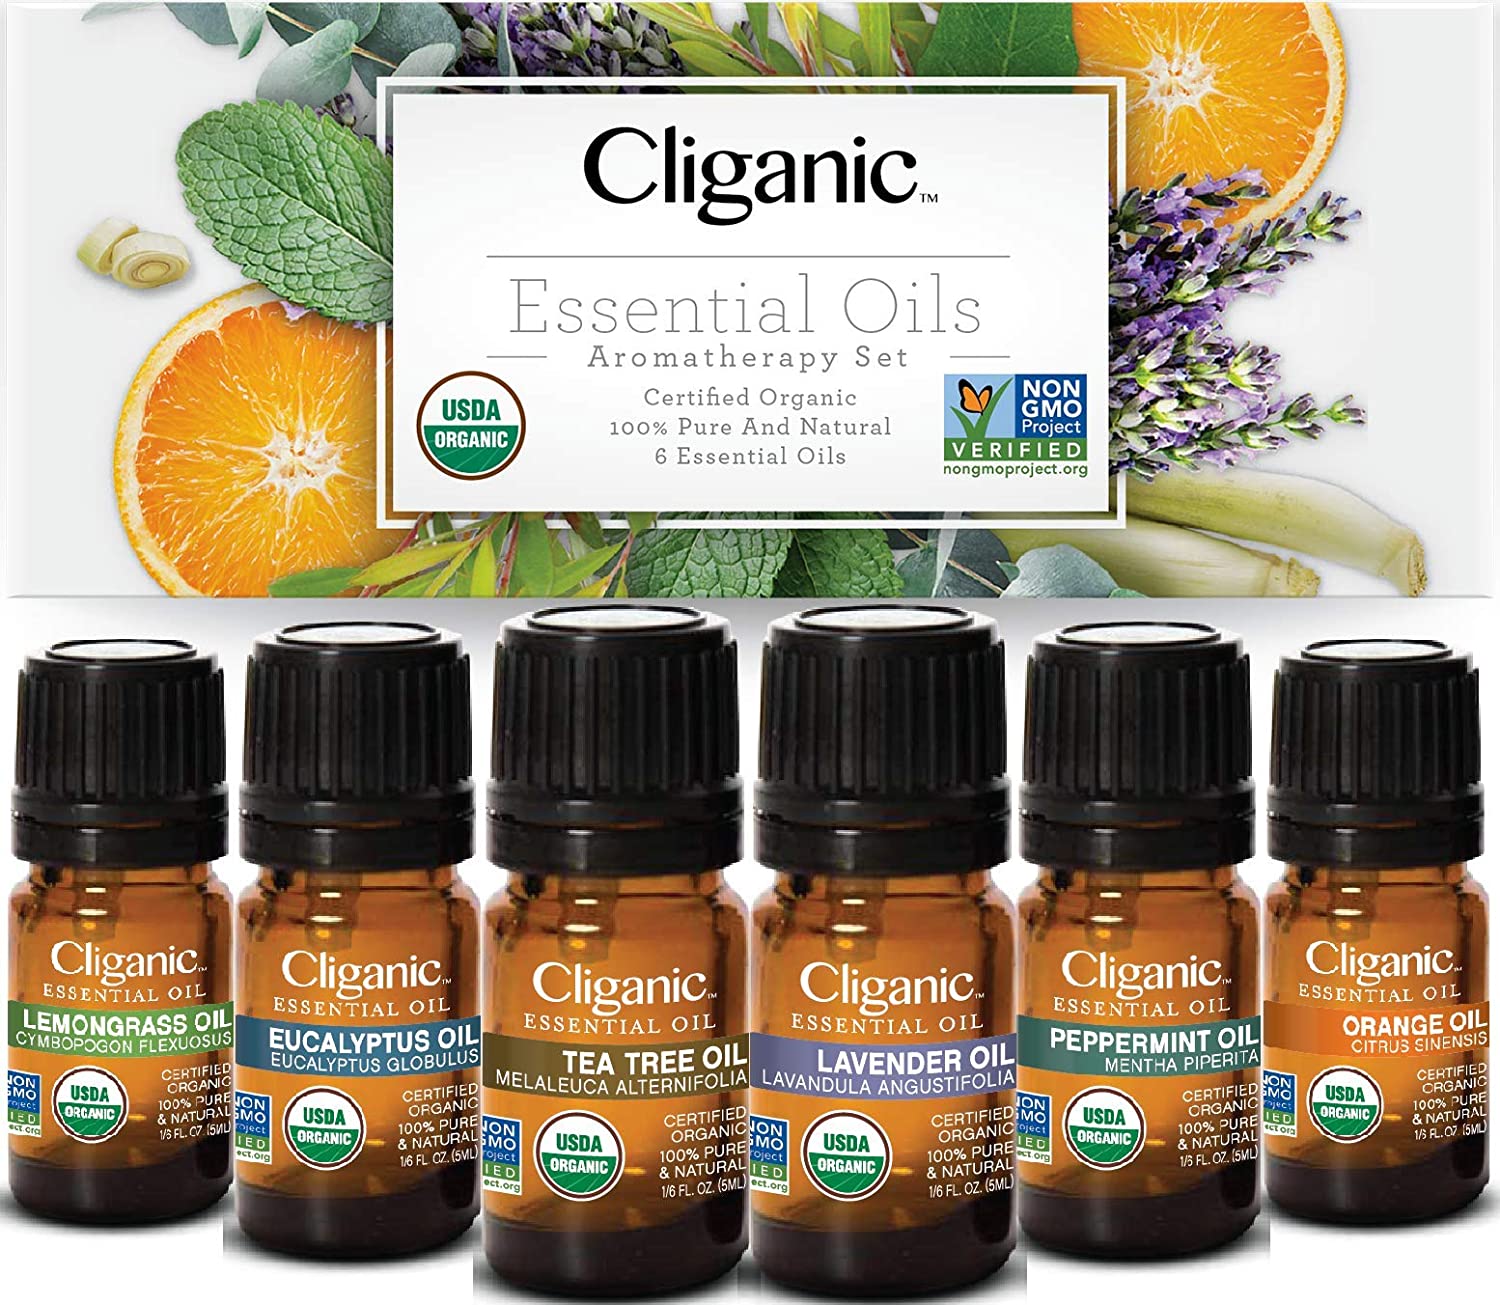 Cliganic Aromatherapy set of 6 Oils – Instacryo